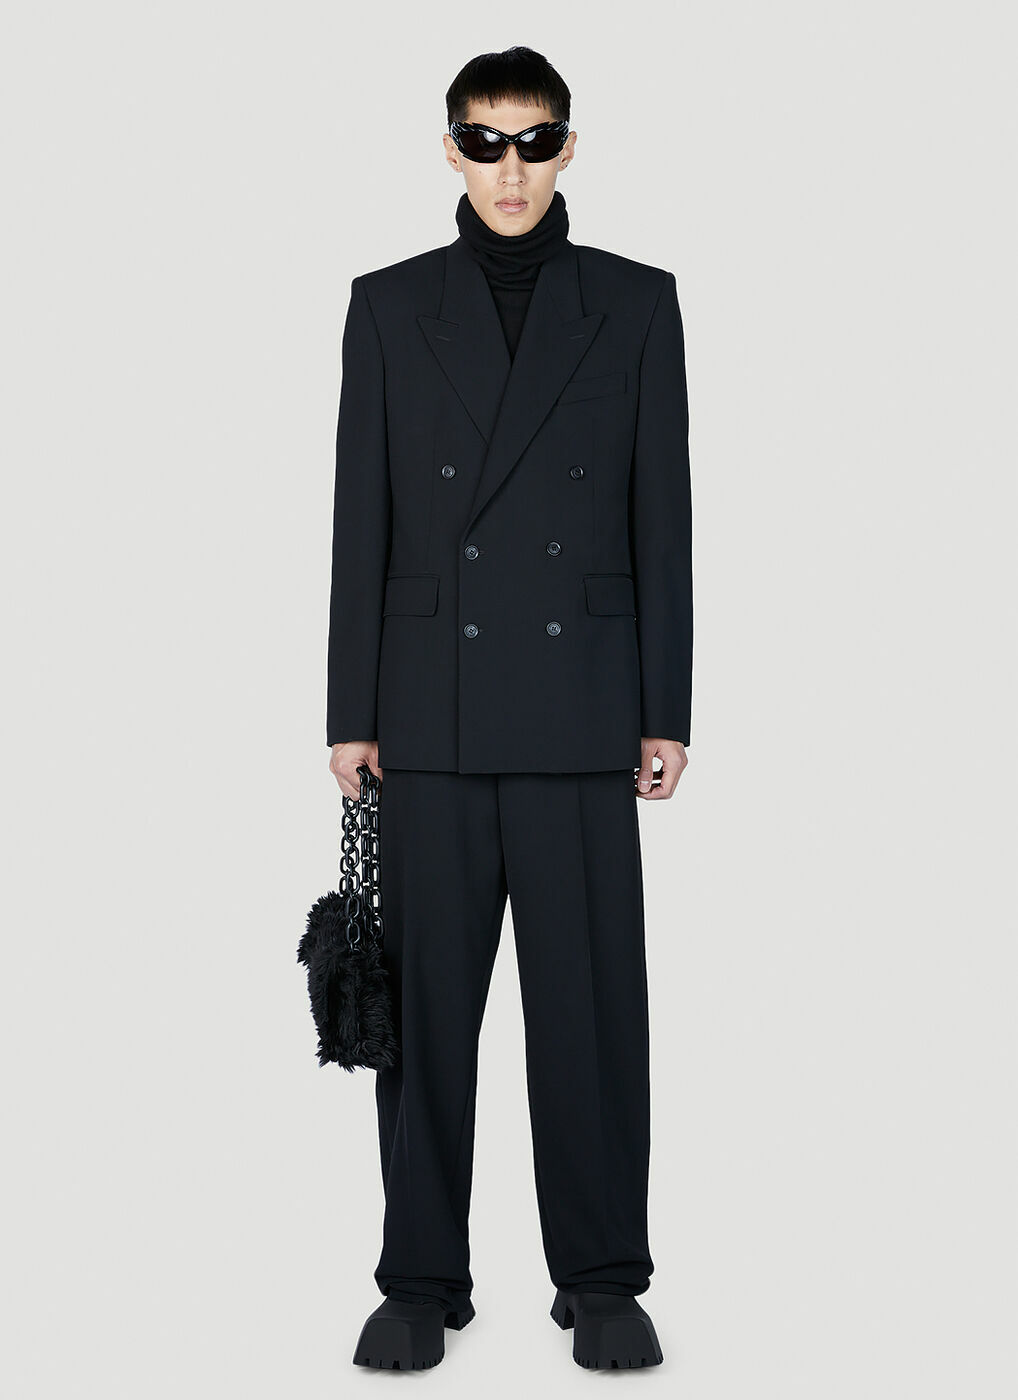 Balenciaga - Tailored Blazer in Black Balenciaga